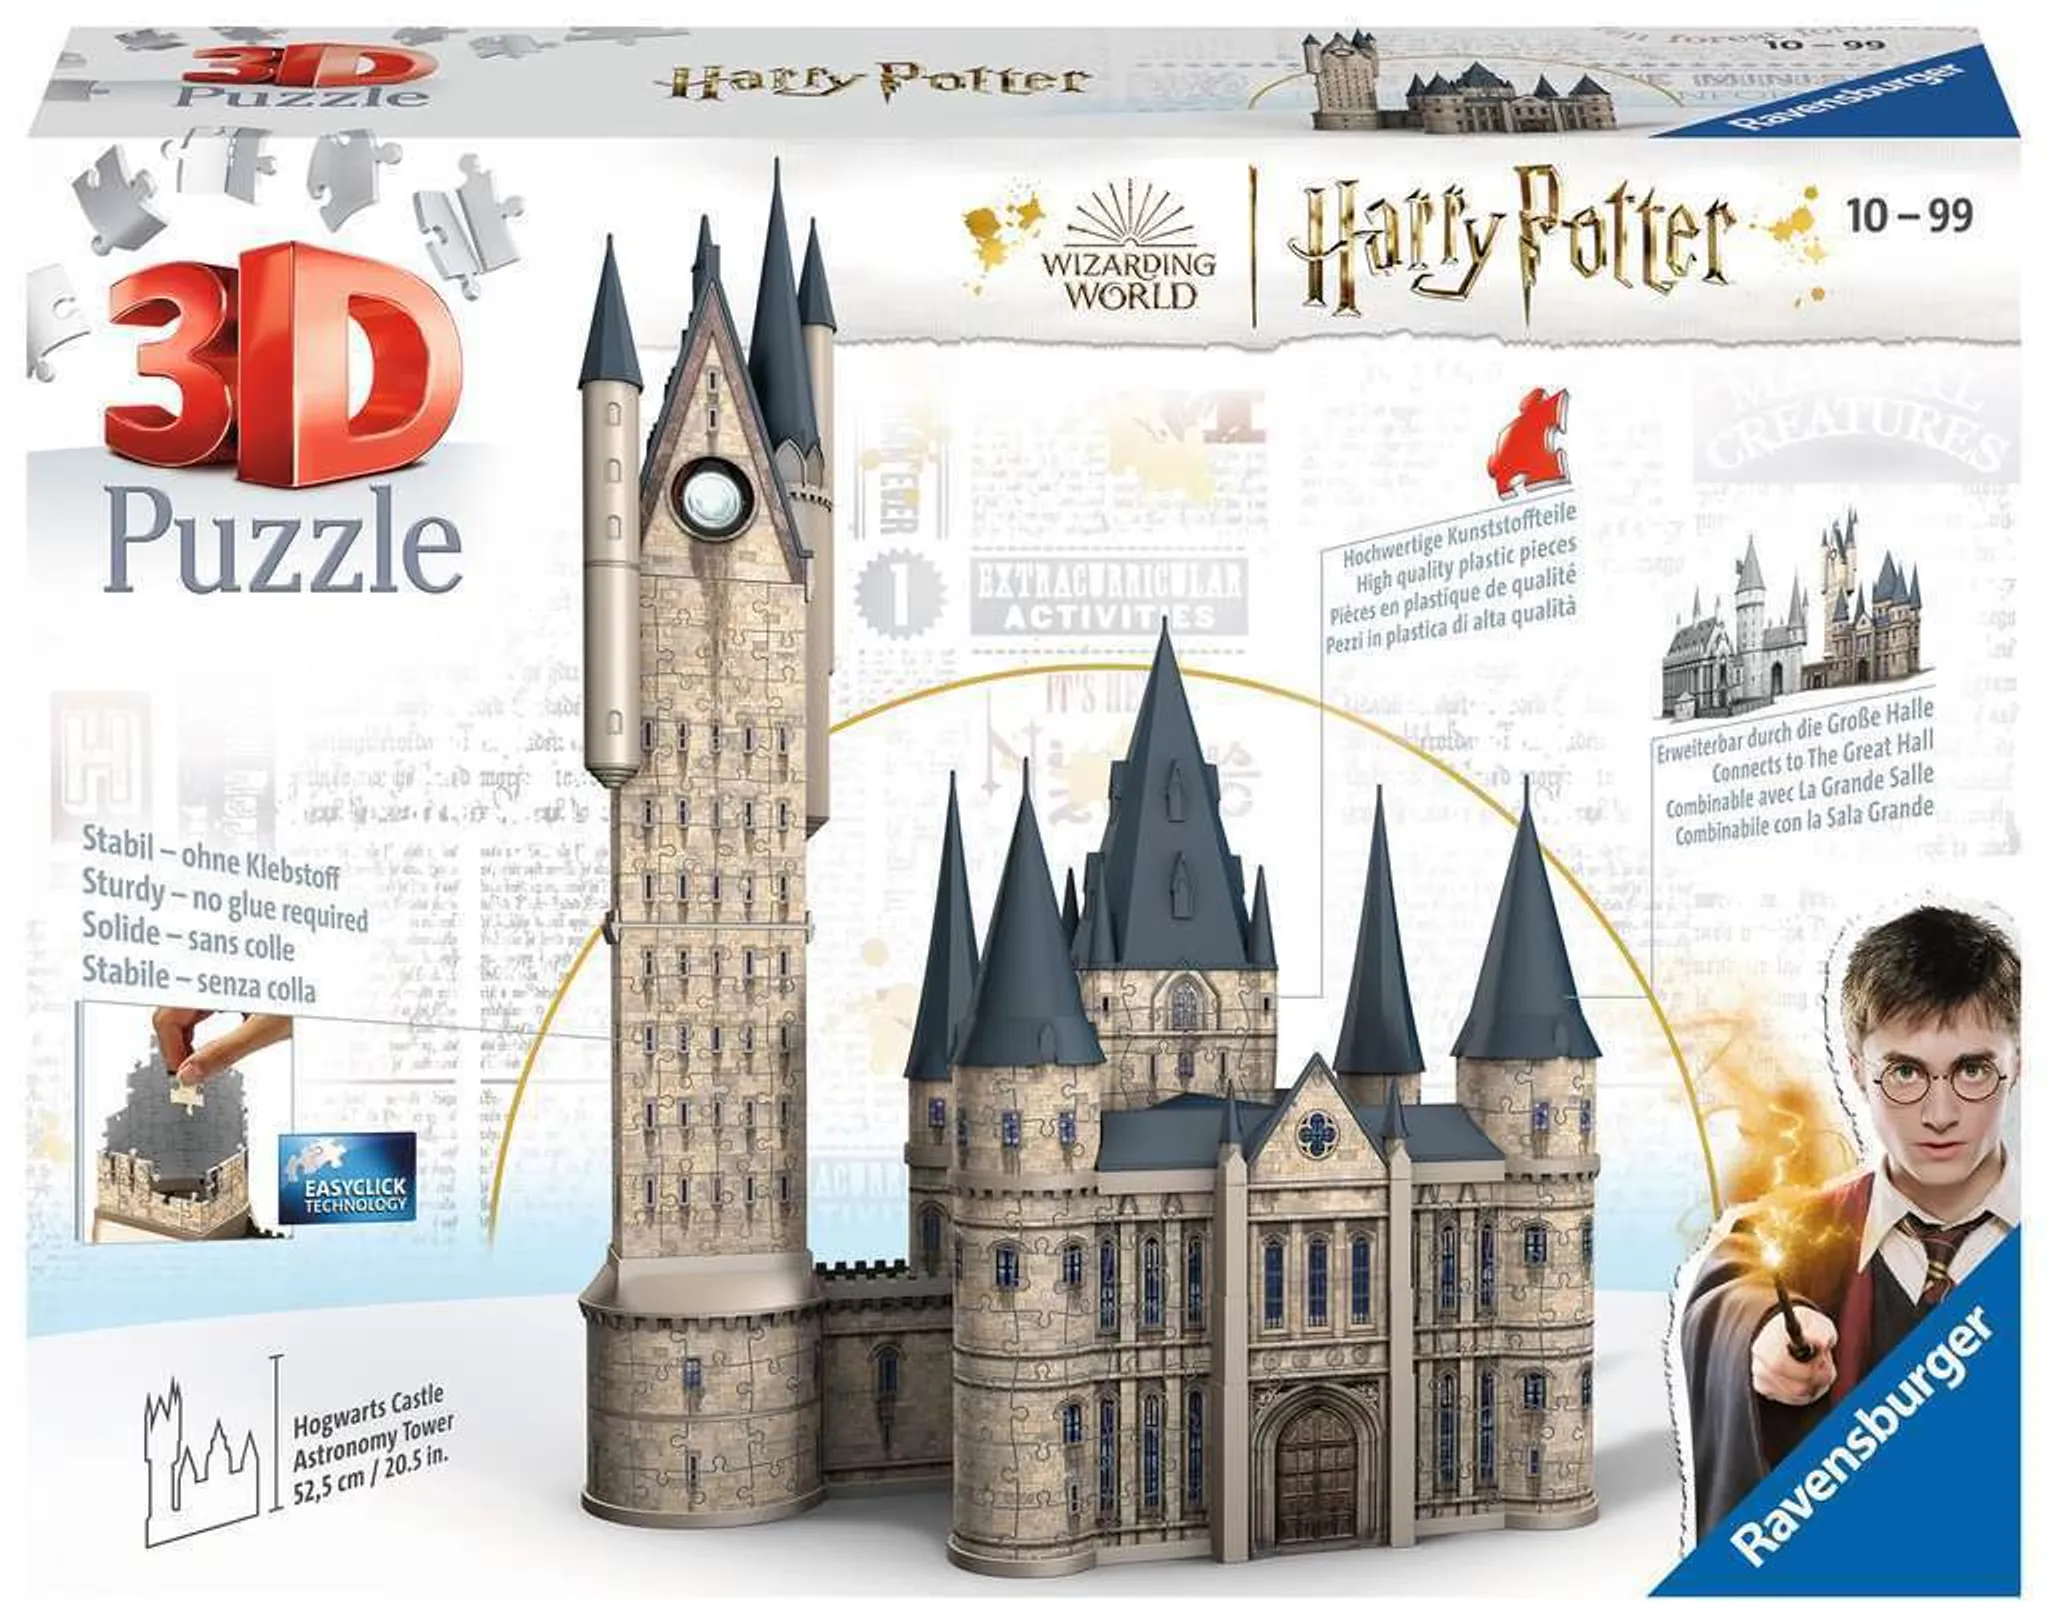 3D Puzzle Utensilo - Harry Potter